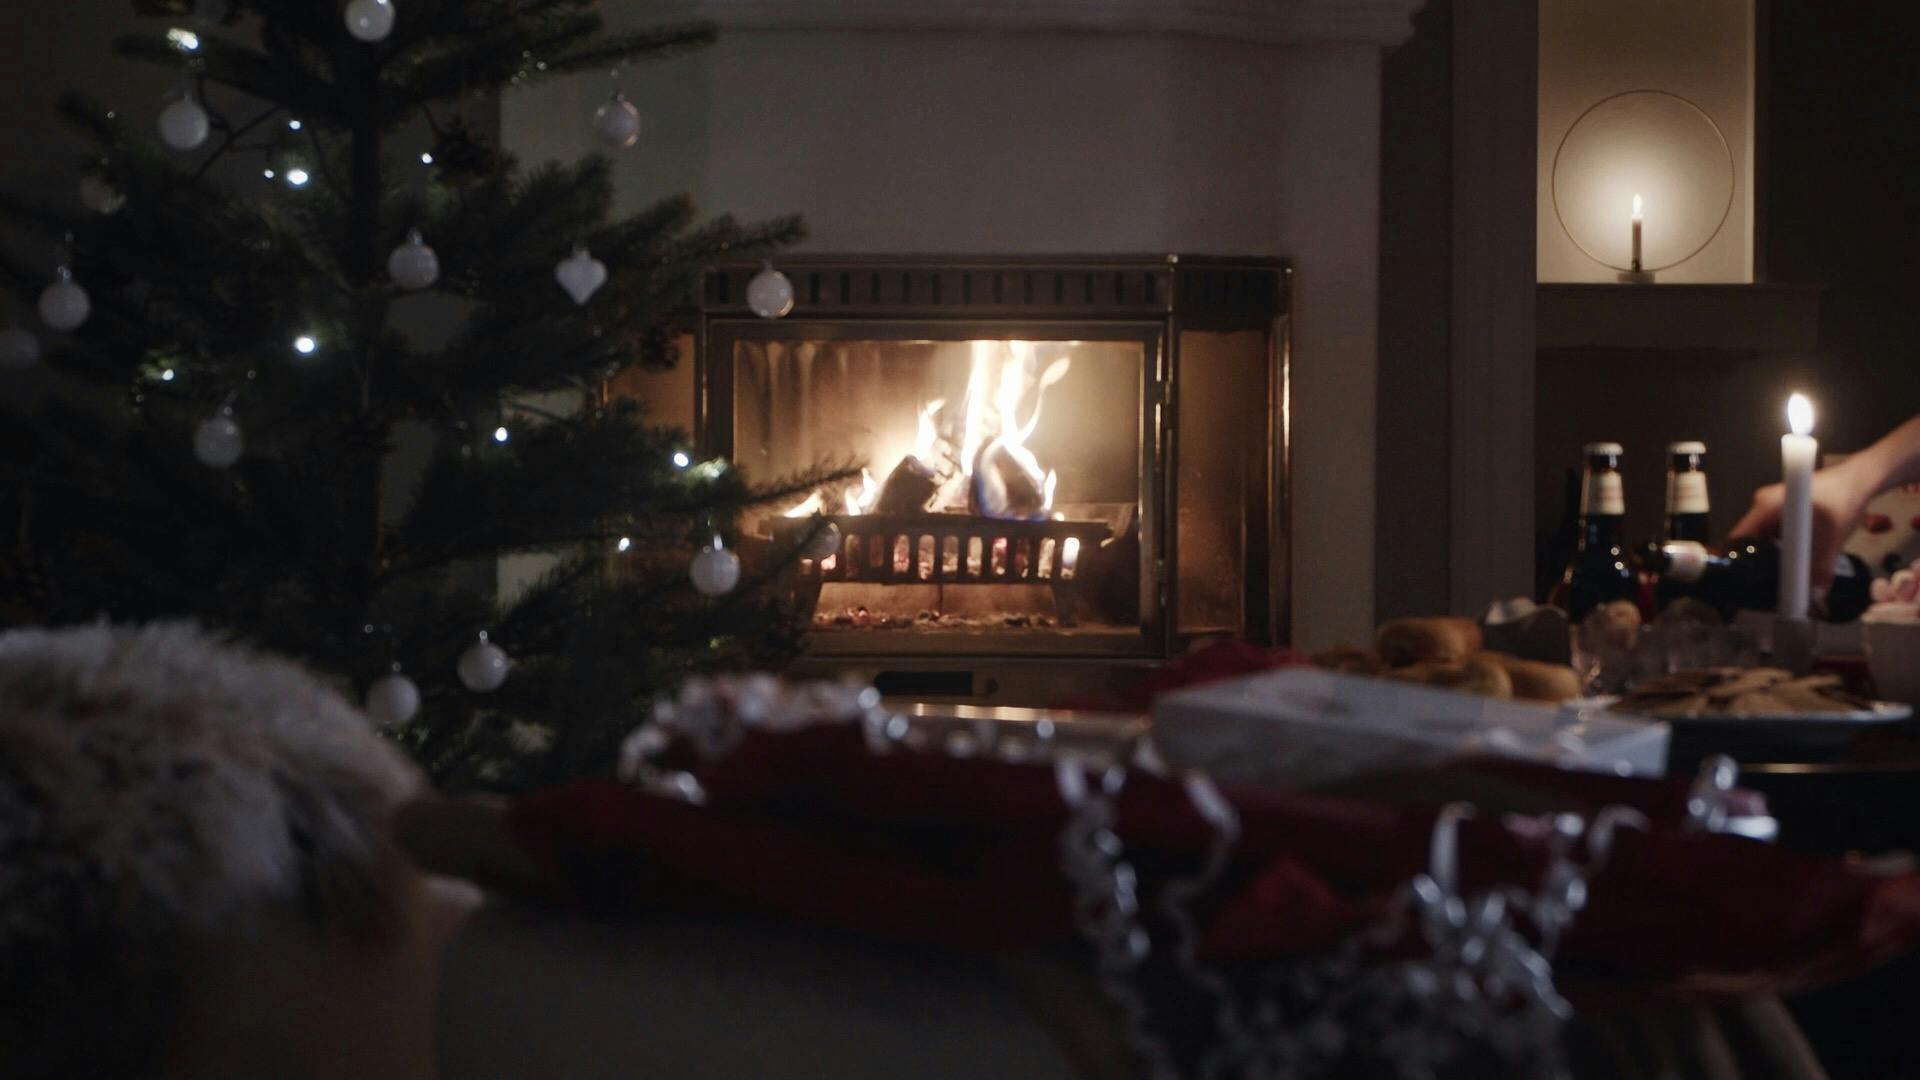 En brinnande brasa i ett julpyntat rum där det står julfika på bordet intill en julgran